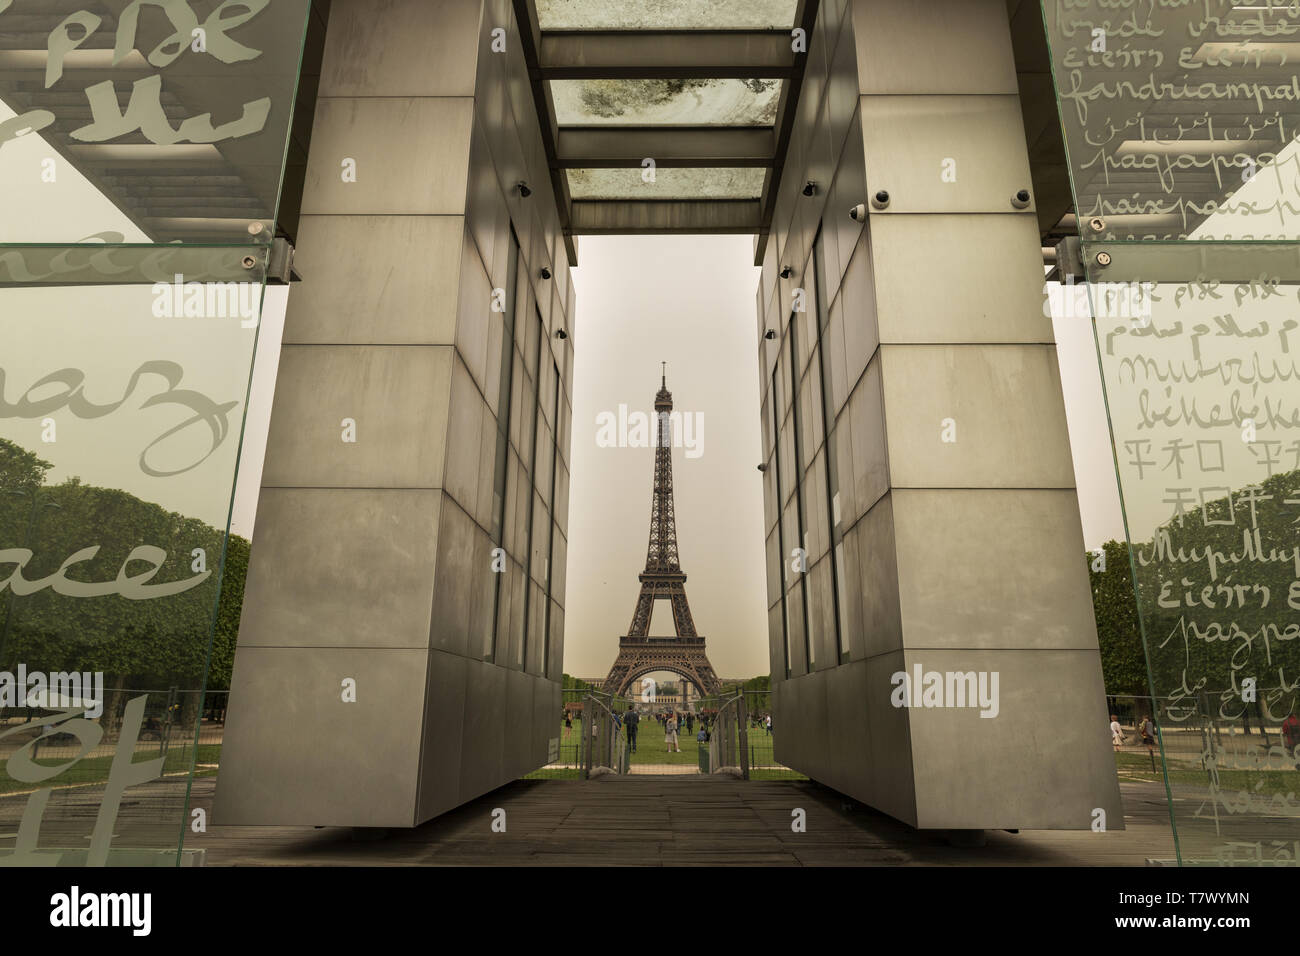 France, Paris, le mur pour la paix, situé sur le Champ-de-Mars pour les commémorations de l'année 2000, la structure se compose de 12 panneaux de verre. Banque D'Images